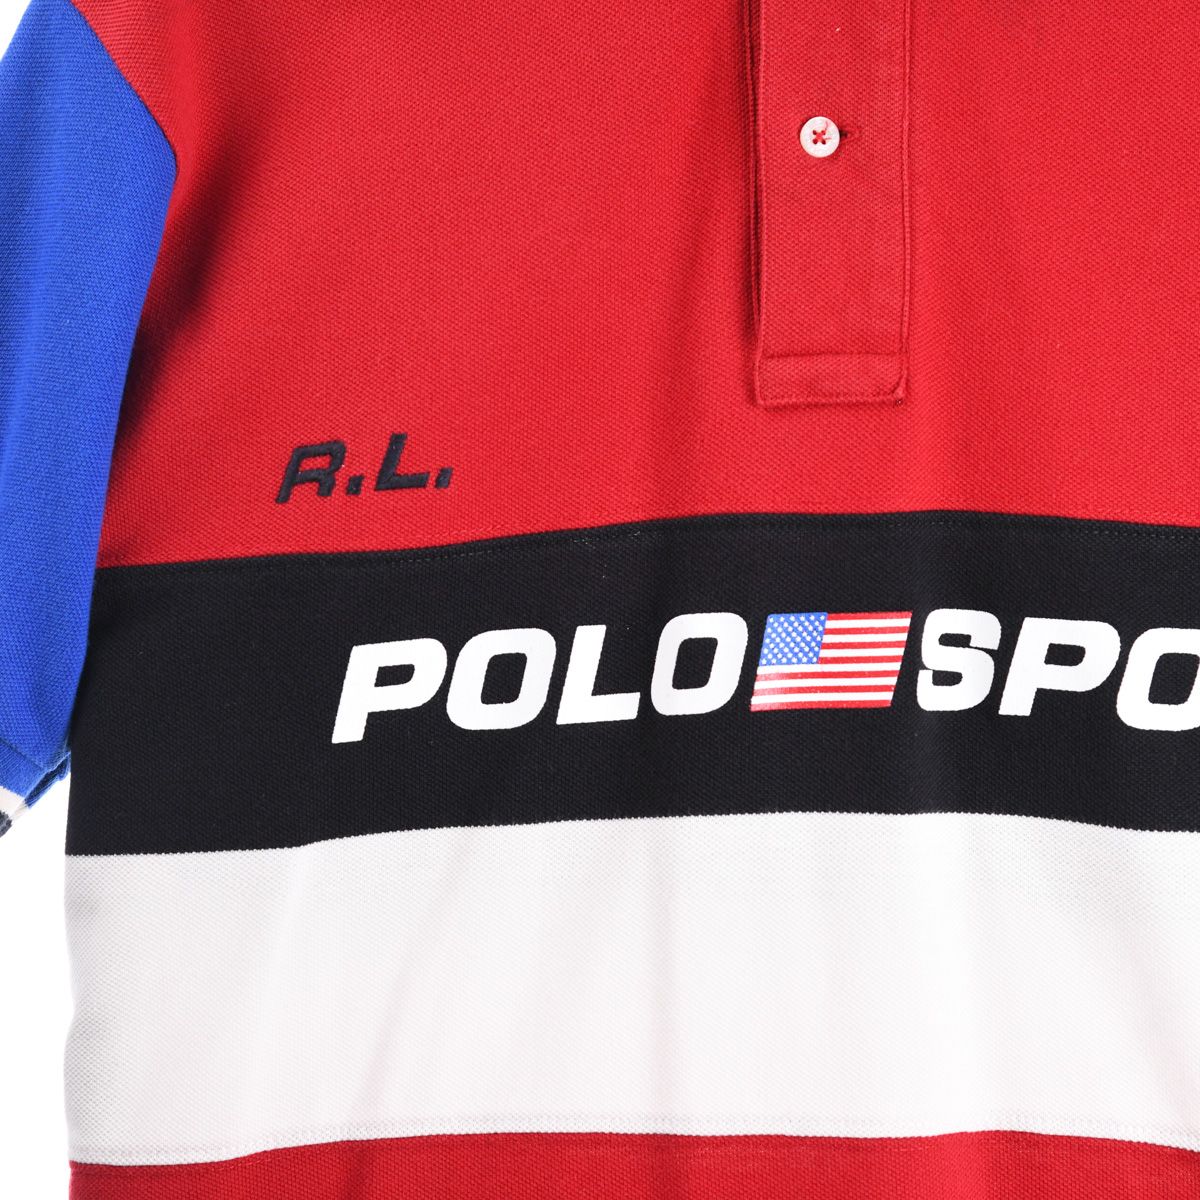 Ralph Lauren Polo Sport Polo Shirt